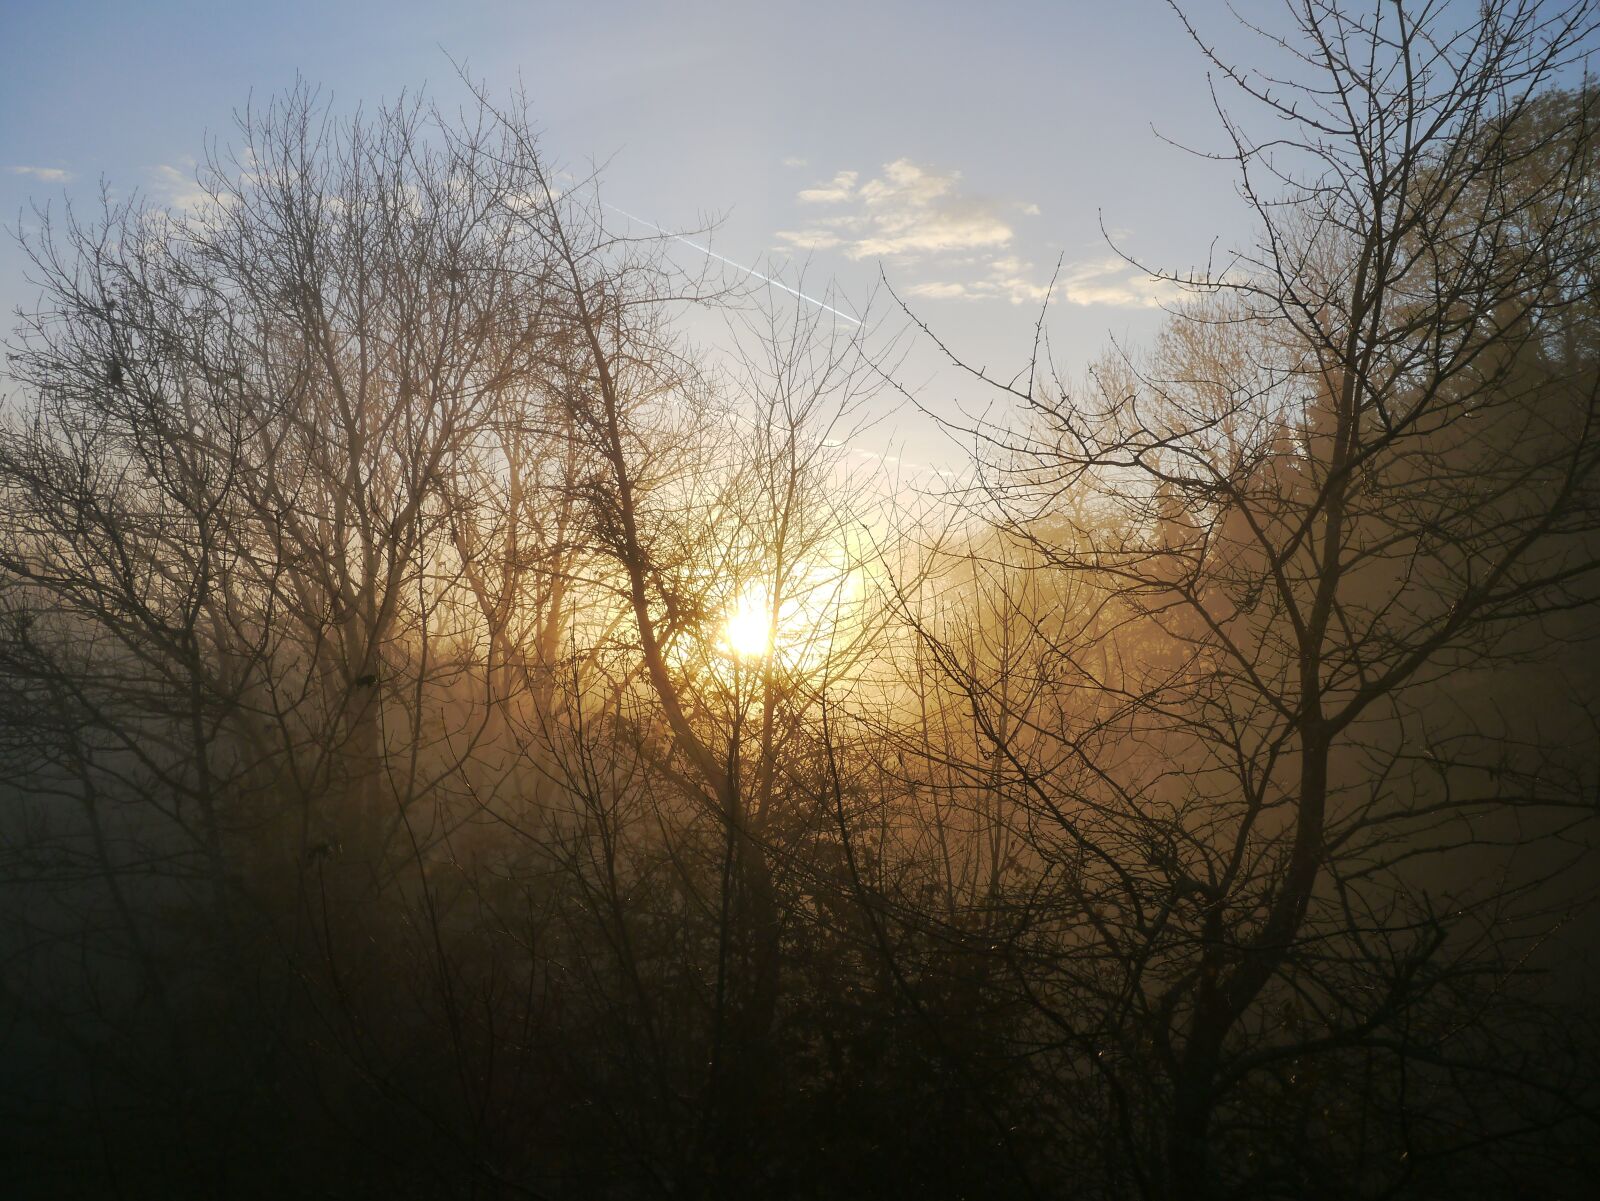 Panasonic Lumix DMC-G3 sample photo. Sunrise, fog, autumn photography